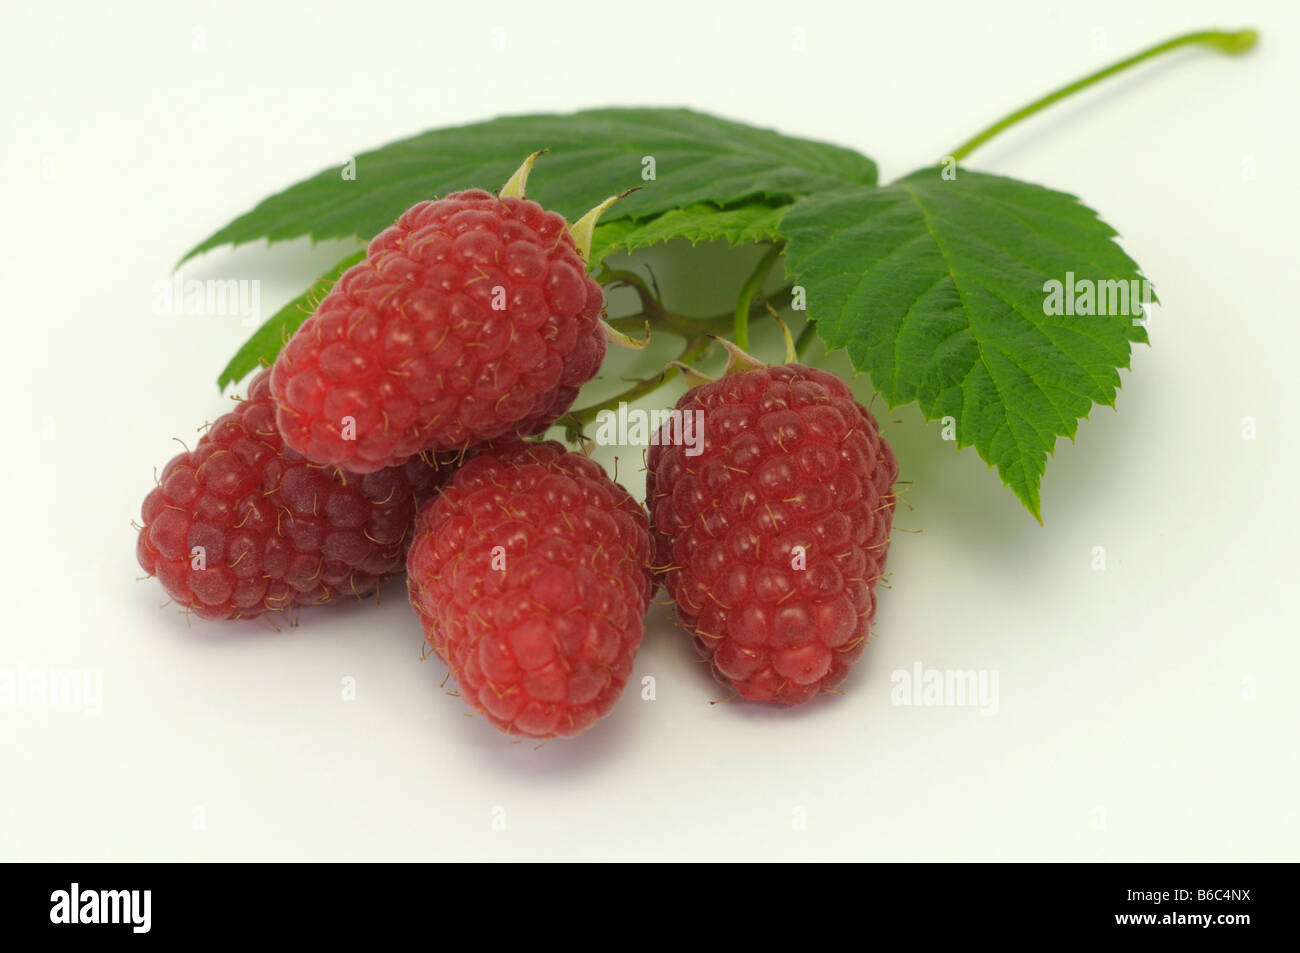 Himbeere Rubus Idaeus Zweig mit Beeren Studio Bild Stockfoto